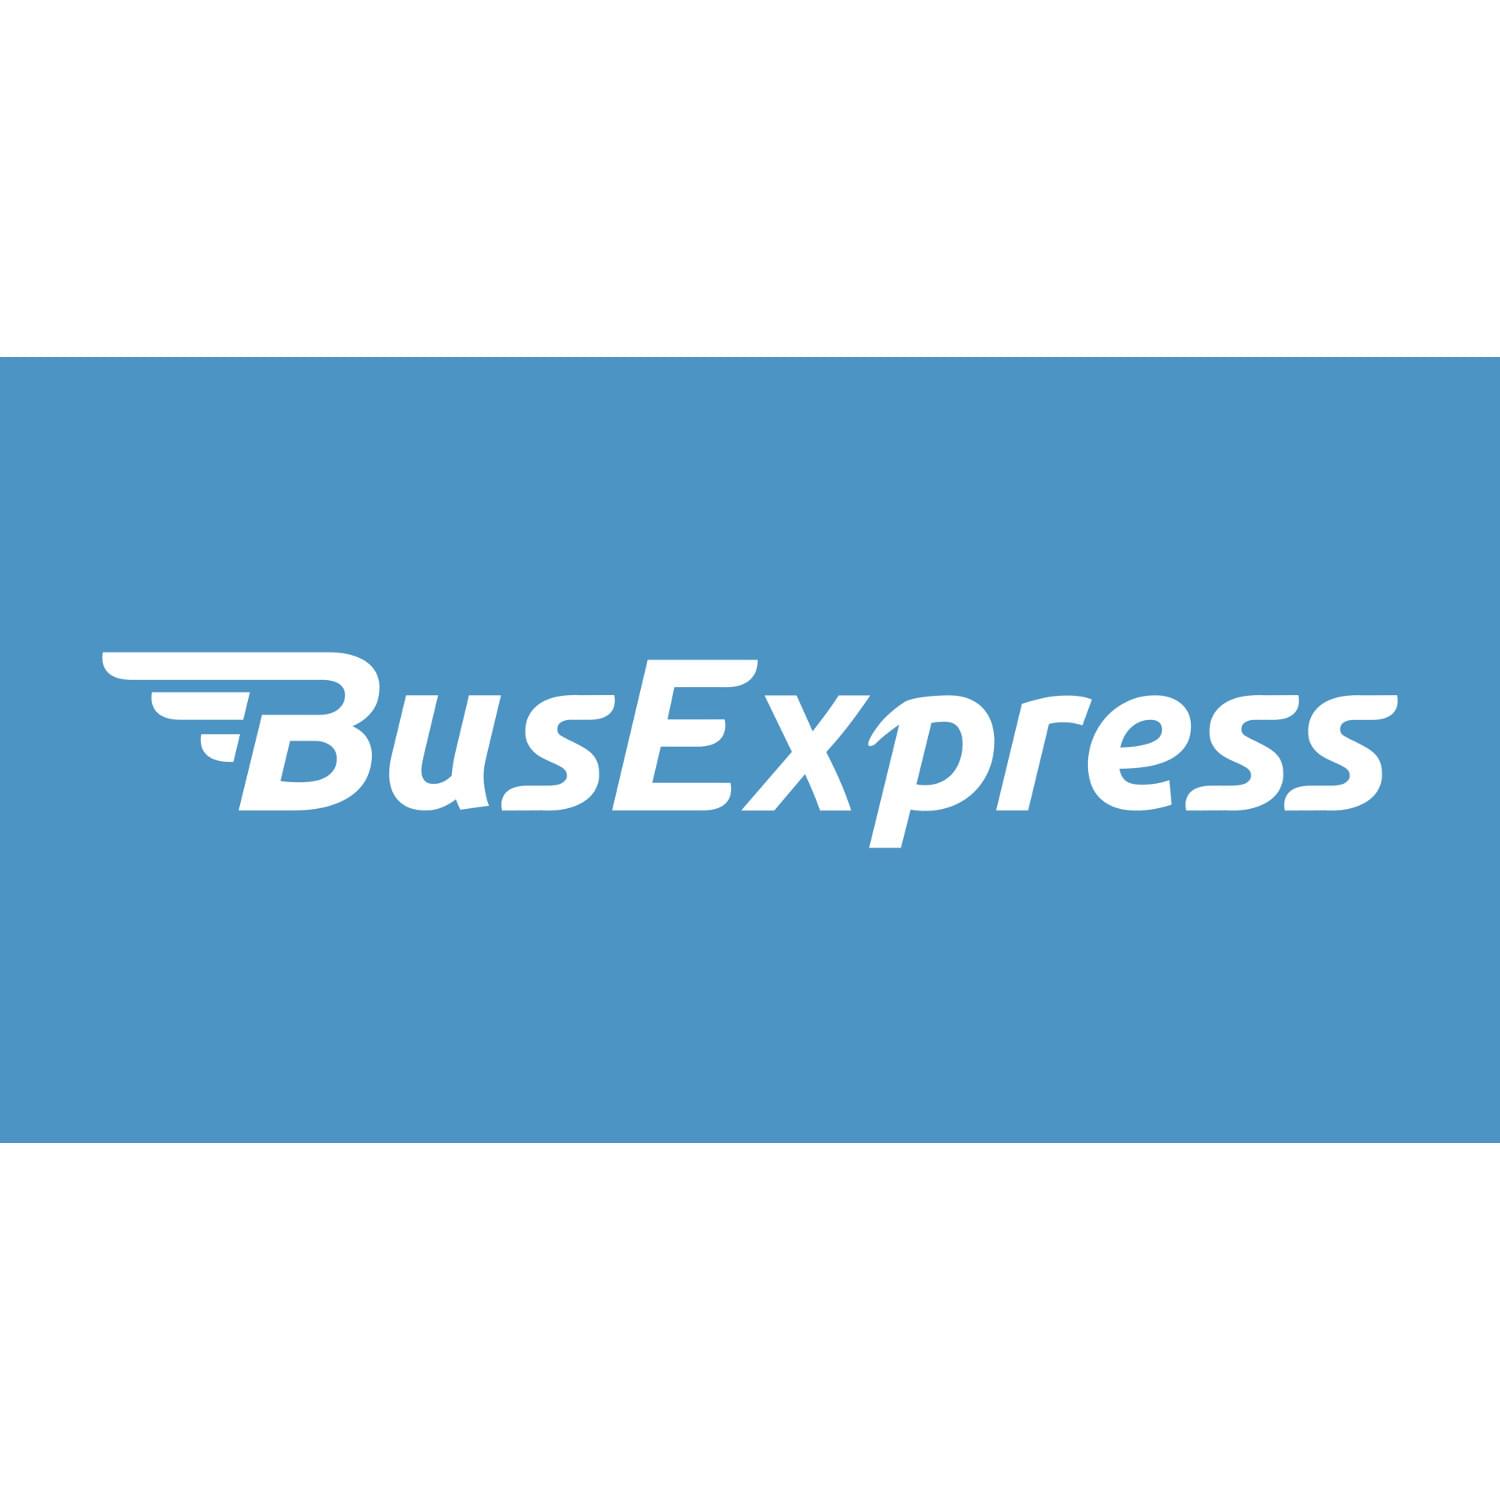 (c) Busexpress.bg